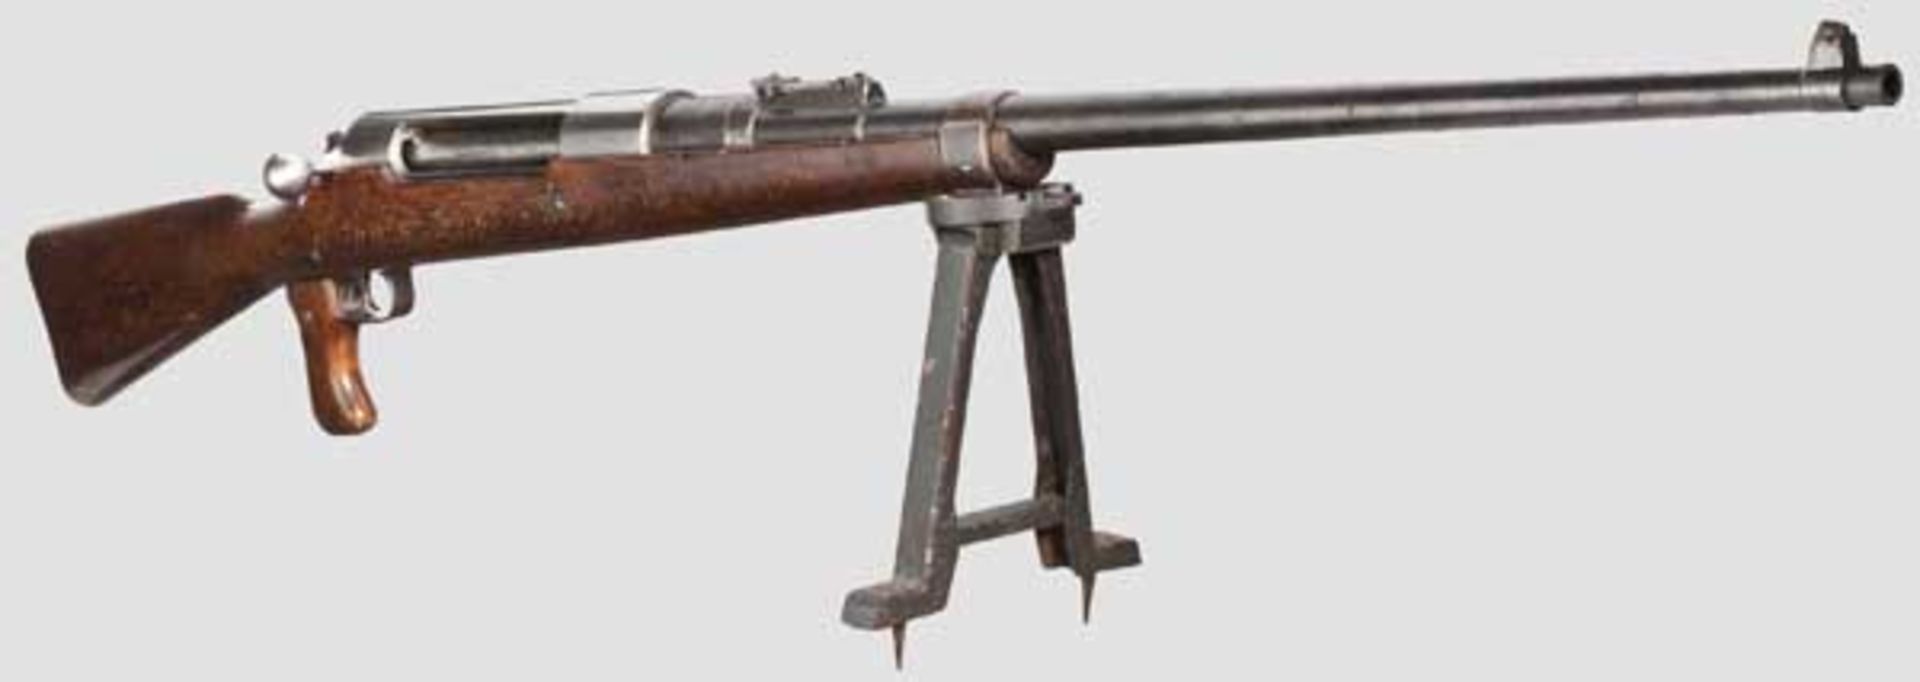 Tankgewehr Mauser M 1918 Kal. 13 x 93 HR (Halbrand), Nr. 569. Nummerngleich bis auf Pistolengriff.